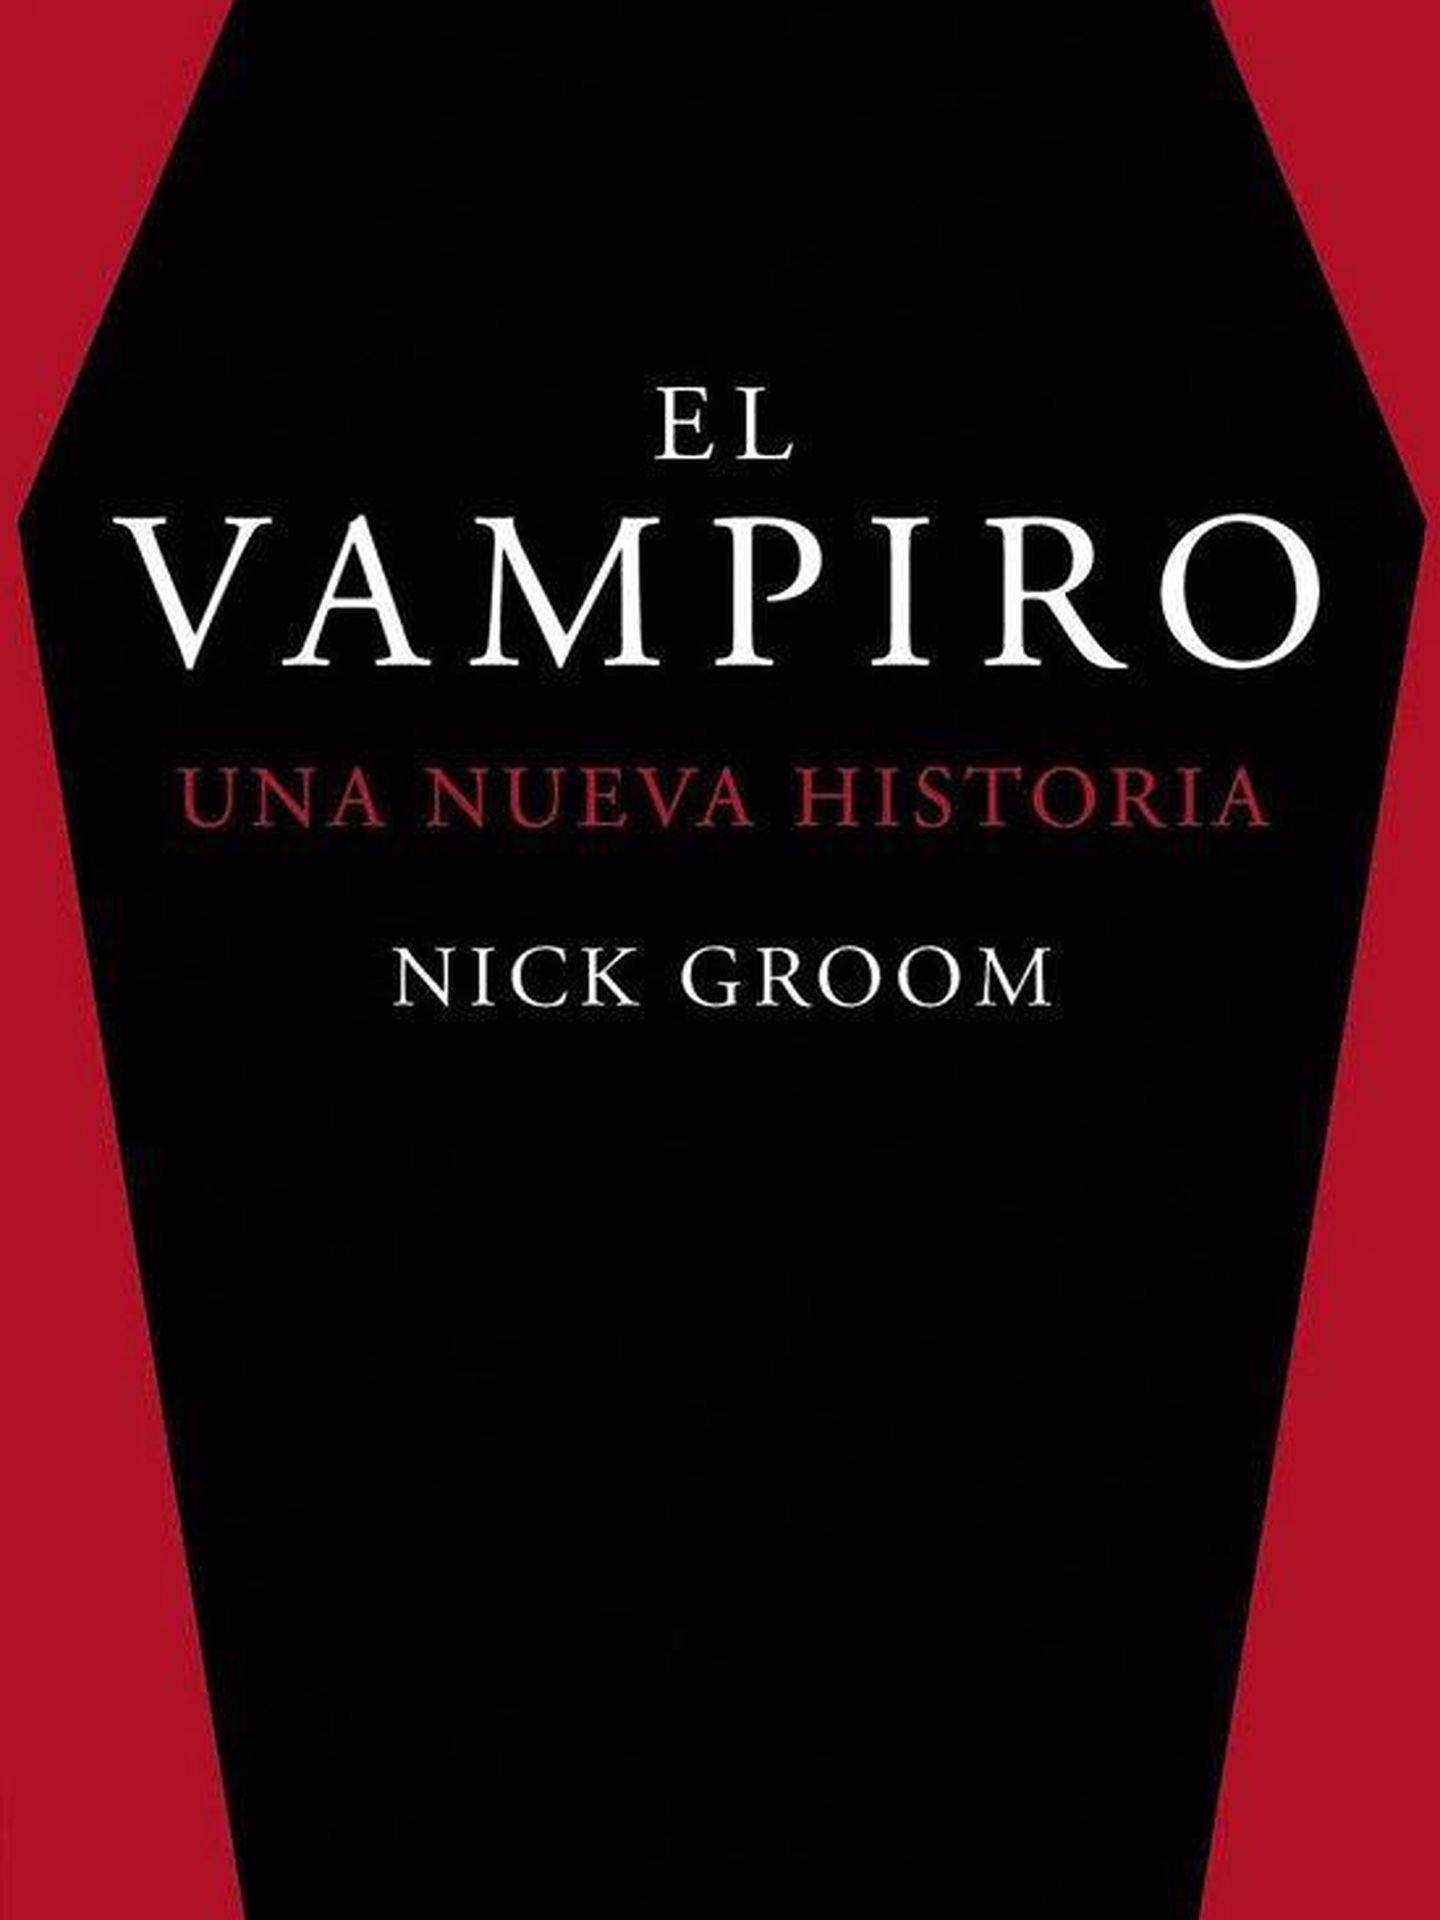 Cubierta de 'El vampiro', de Nick Groom